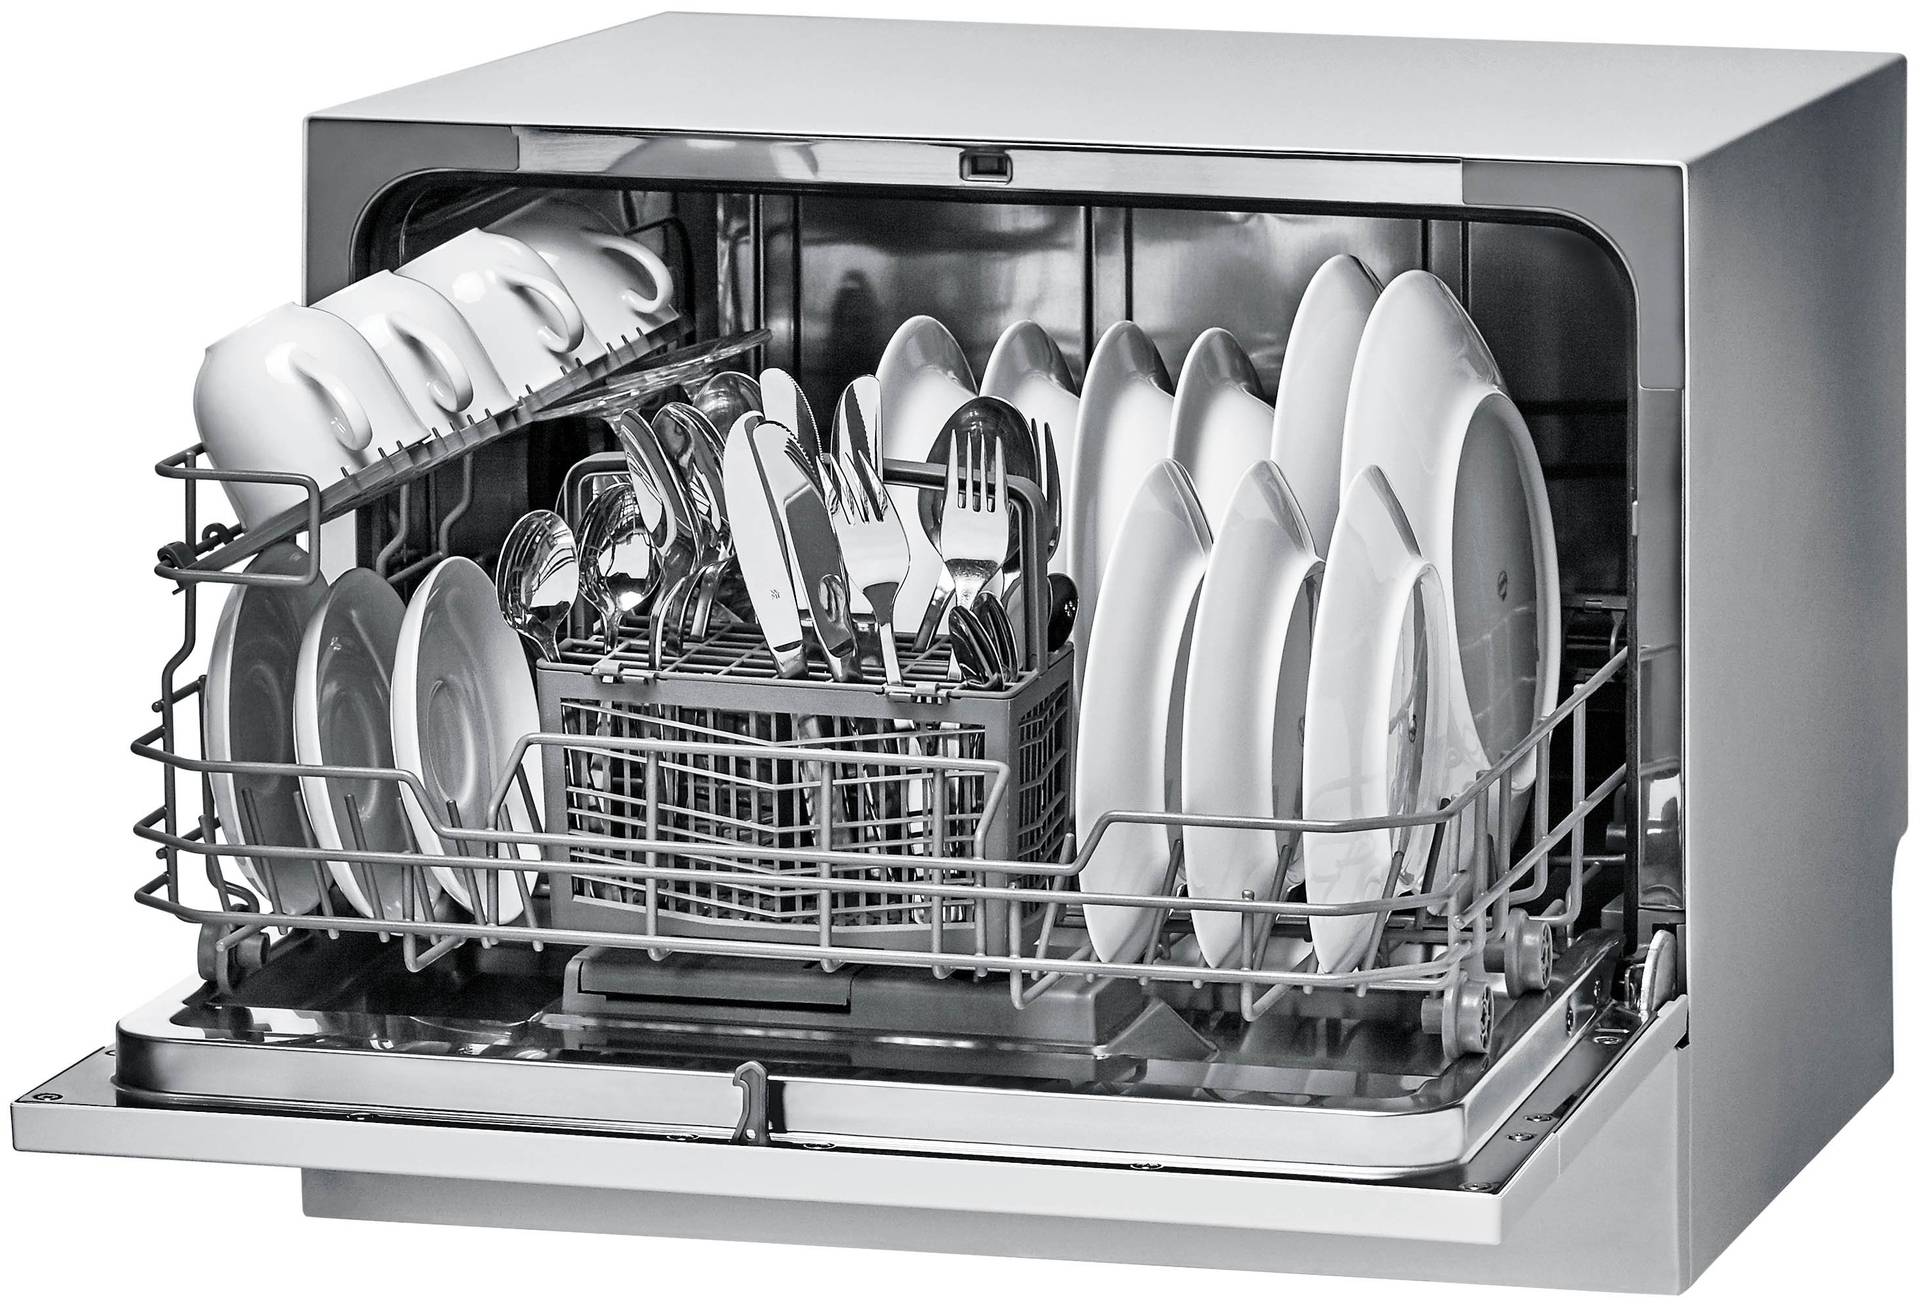 Компактные посудомоечные машины - мини и маленькие модели (обзор)